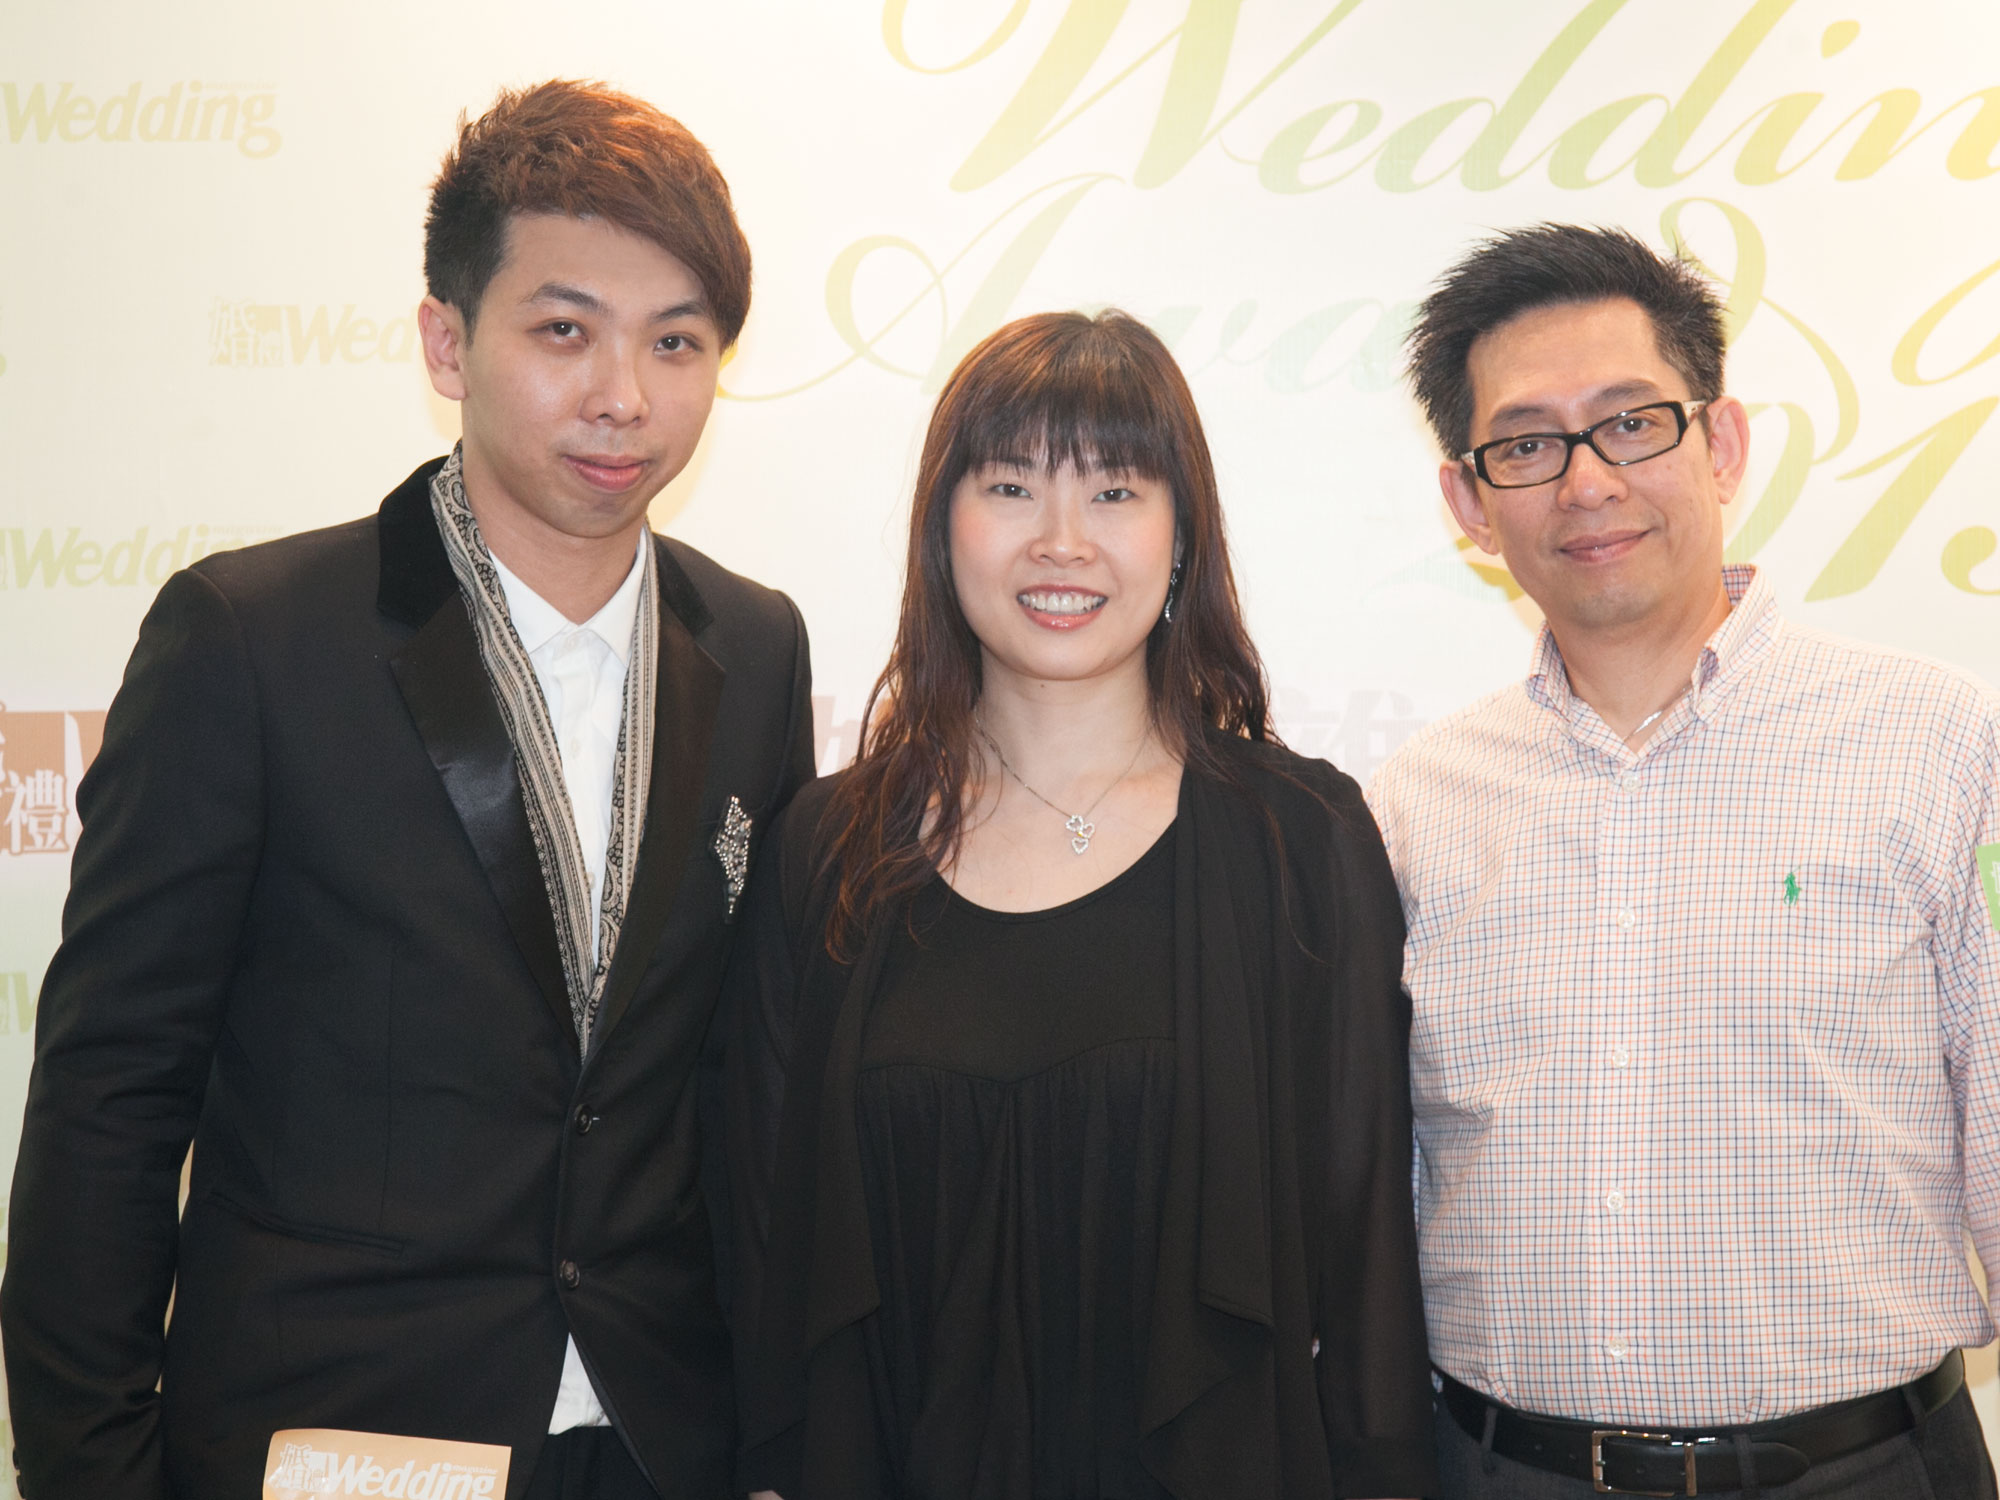 欣蕎婚紗的 Rebecca 及 Stephen 與婚禮雜誌的 Sales & Marketing Manager Ivan Chan合照